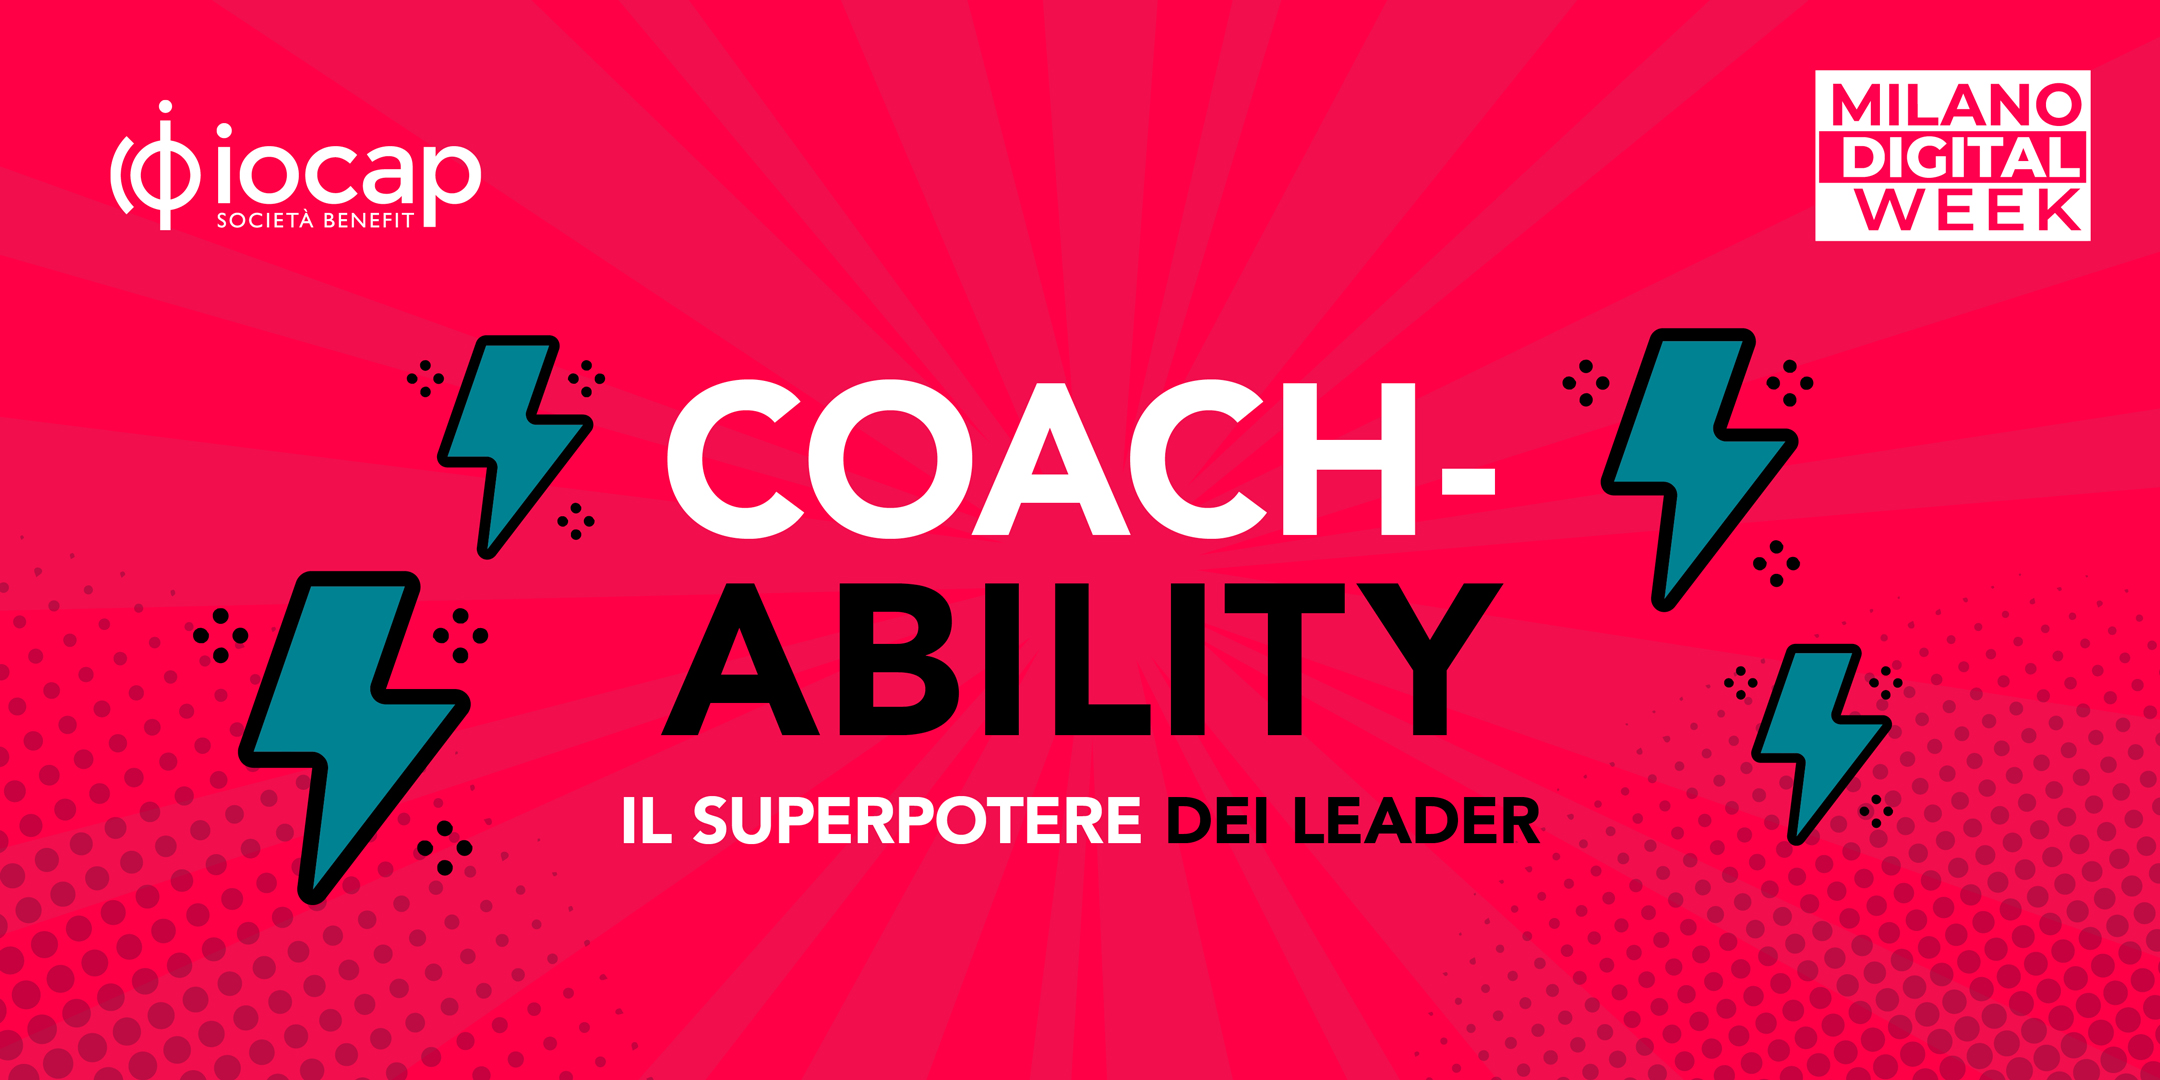 Coach-ability: il superpotere dei leader